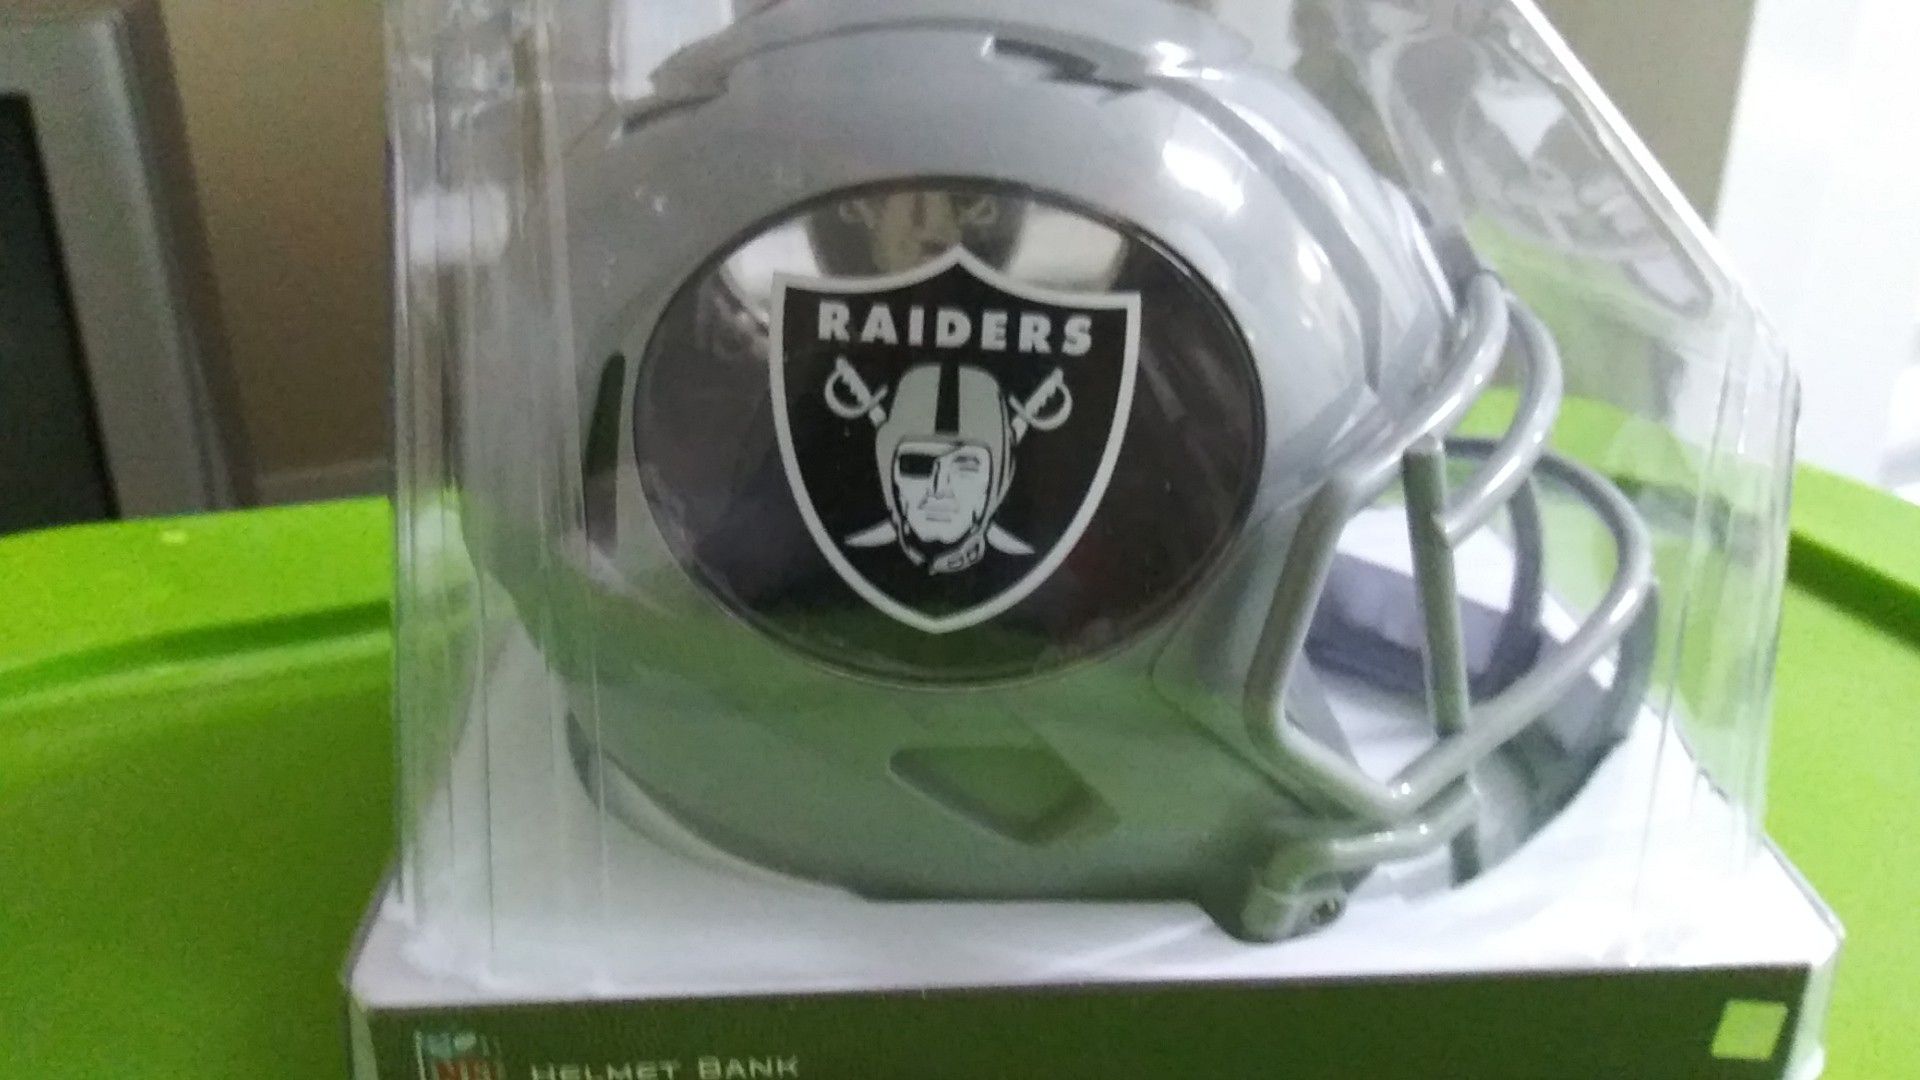 Raiders mini helmet